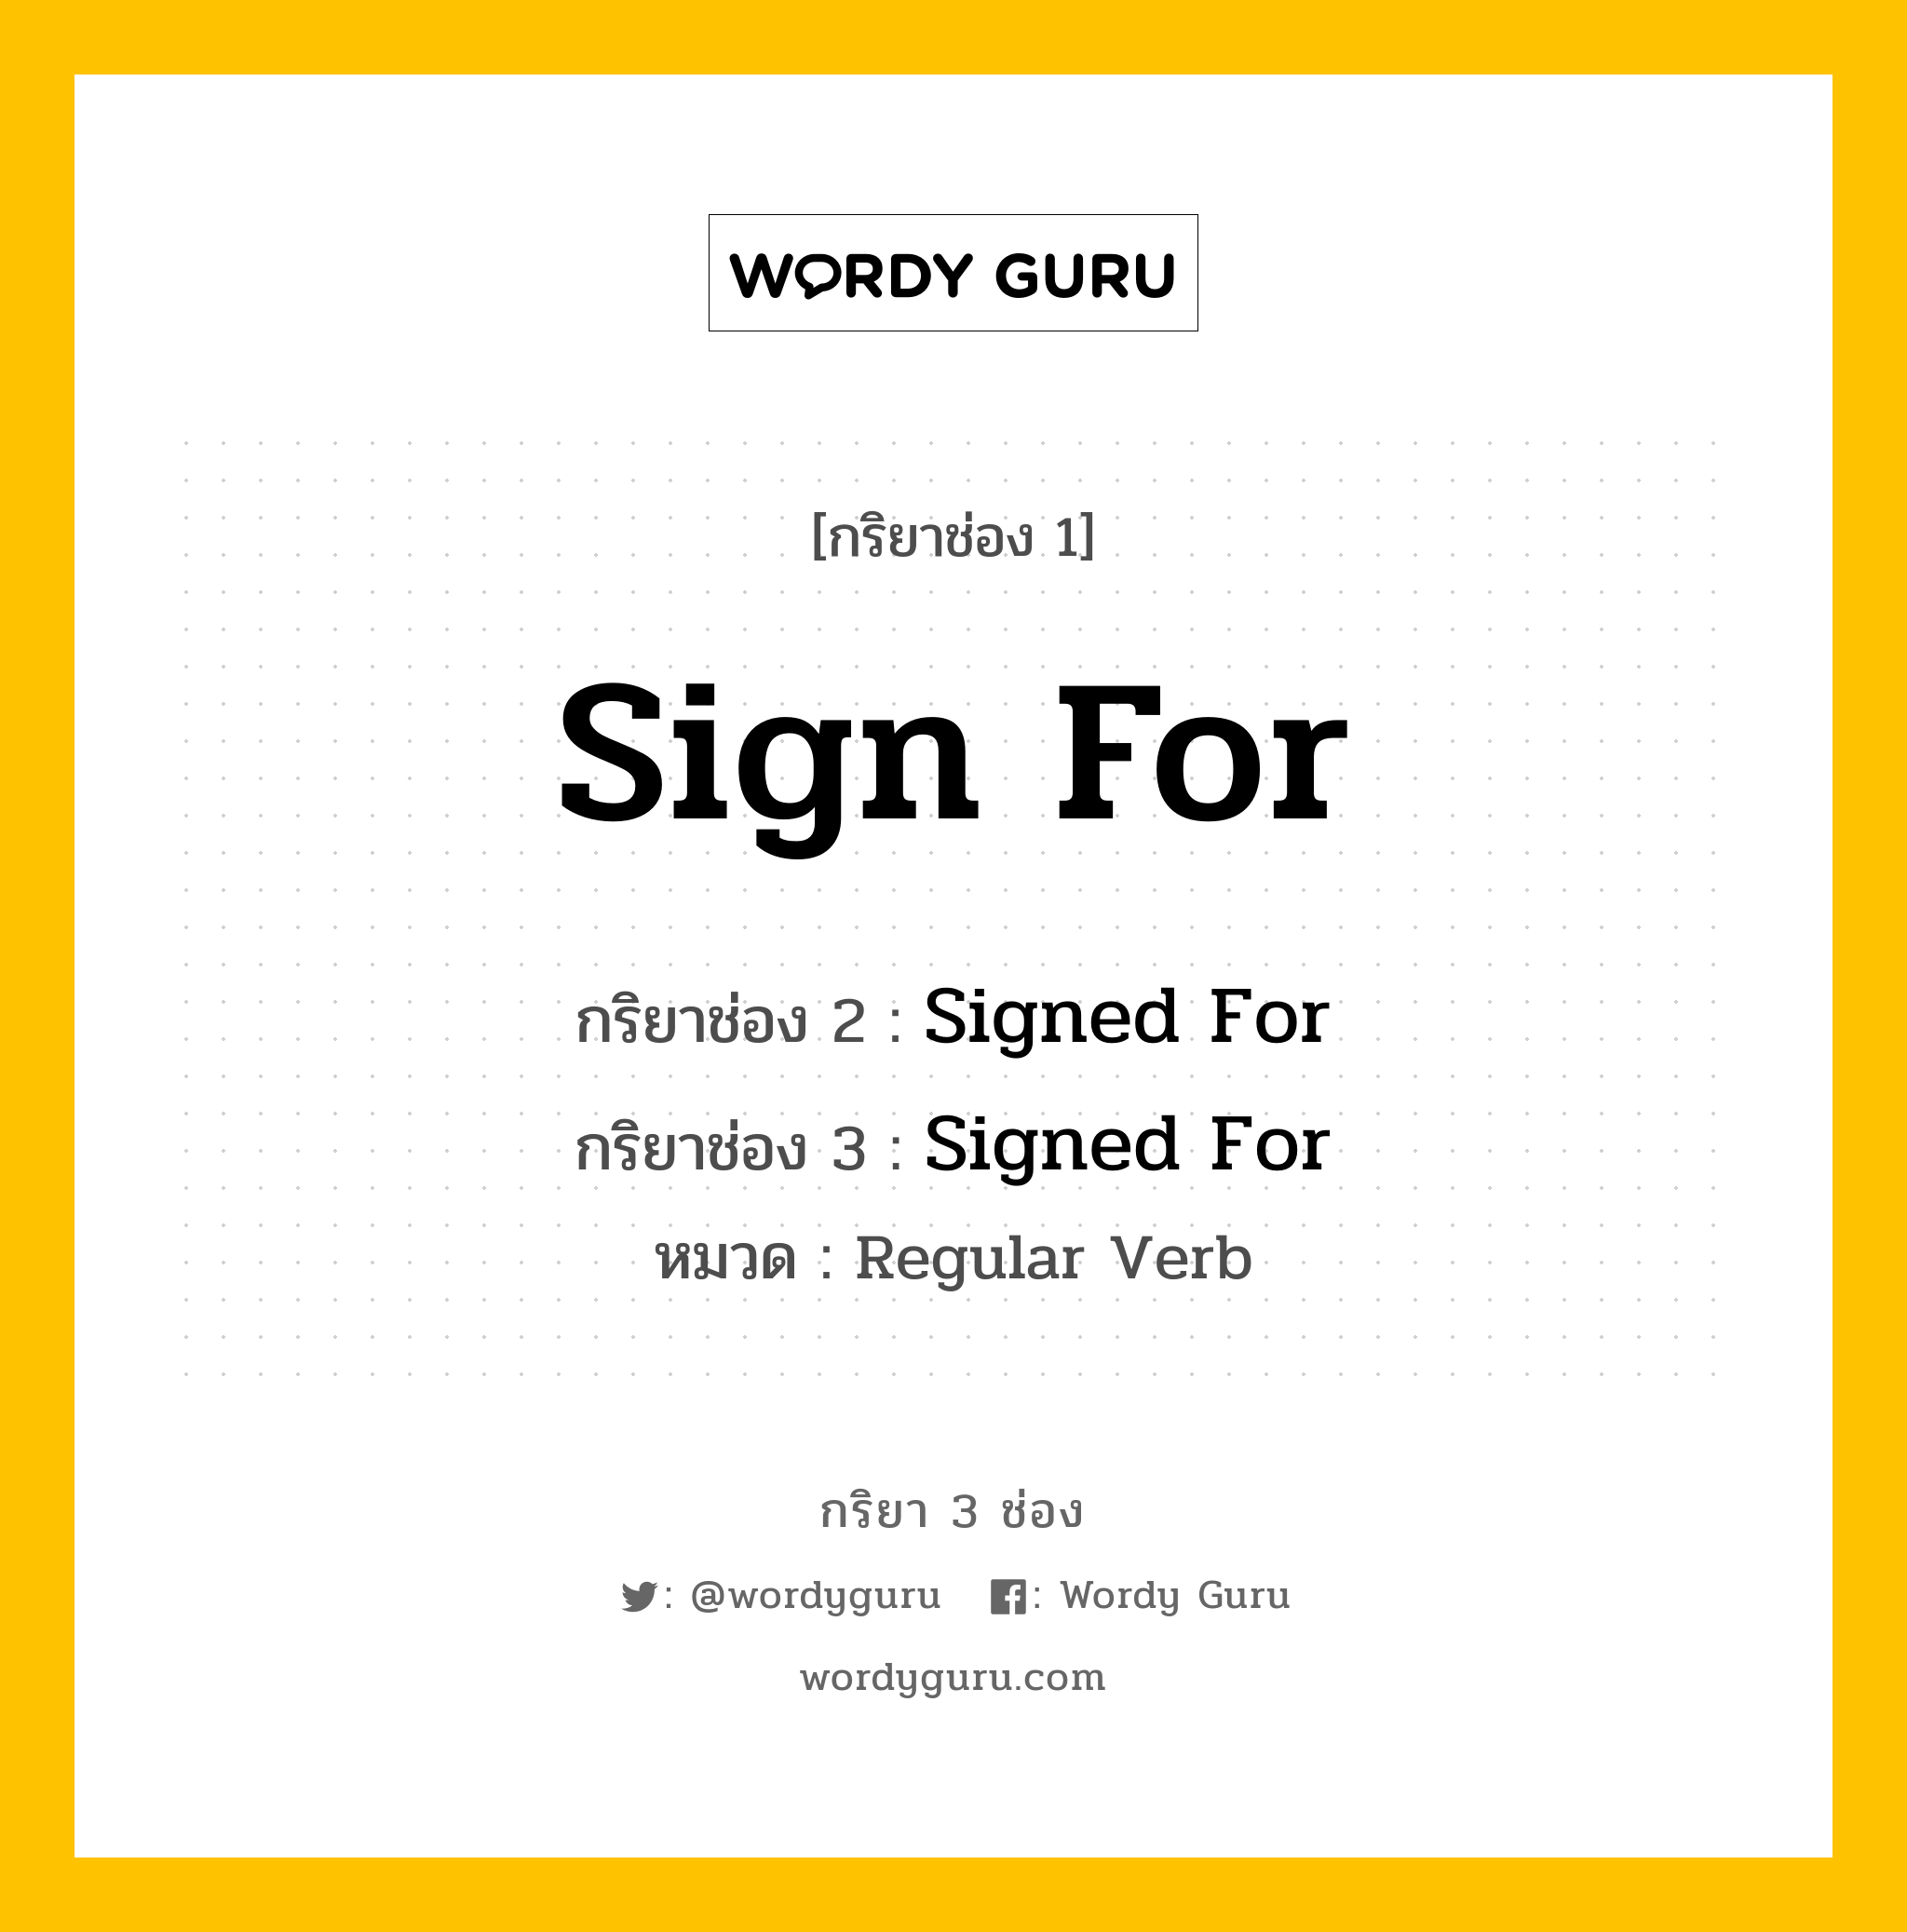 กริยา 3 ช่อง: Sign For ช่อง 2 Sign For ช่อง 3 คืออะไร, กริยาช่อง 1 Sign For กริยาช่อง 2 Signed For กริยาช่อง 3 Signed For หมวด Regular Verb หมวด Regular Verb